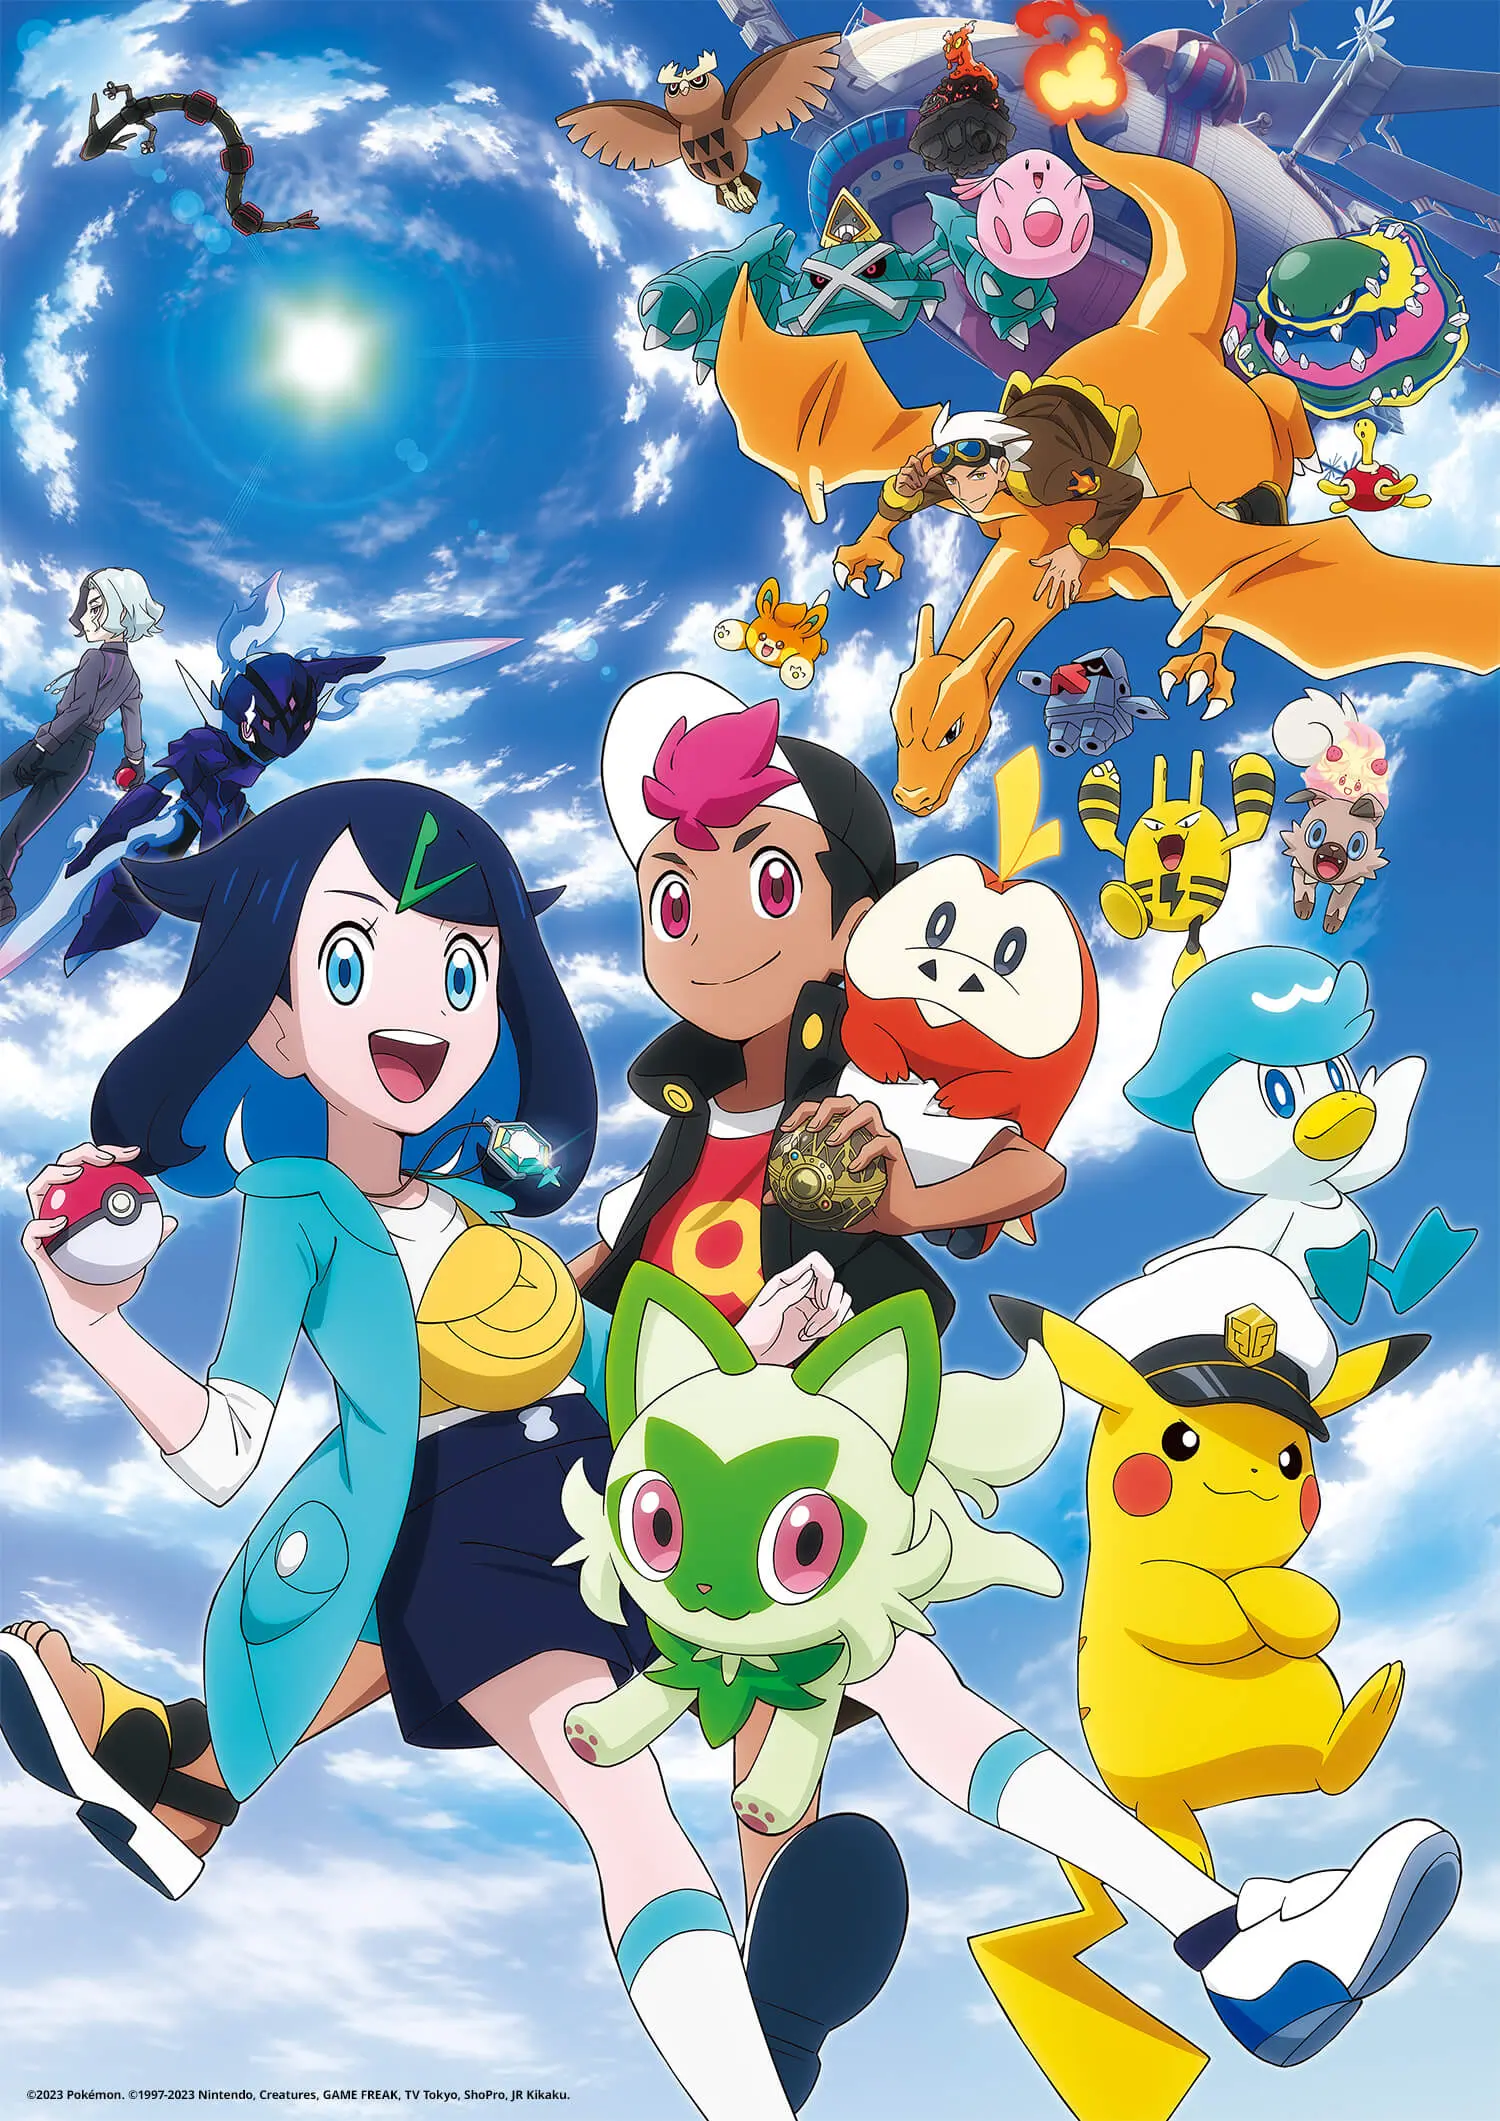 Pokémon Sun & Moon, revelado visual novo dos personagens